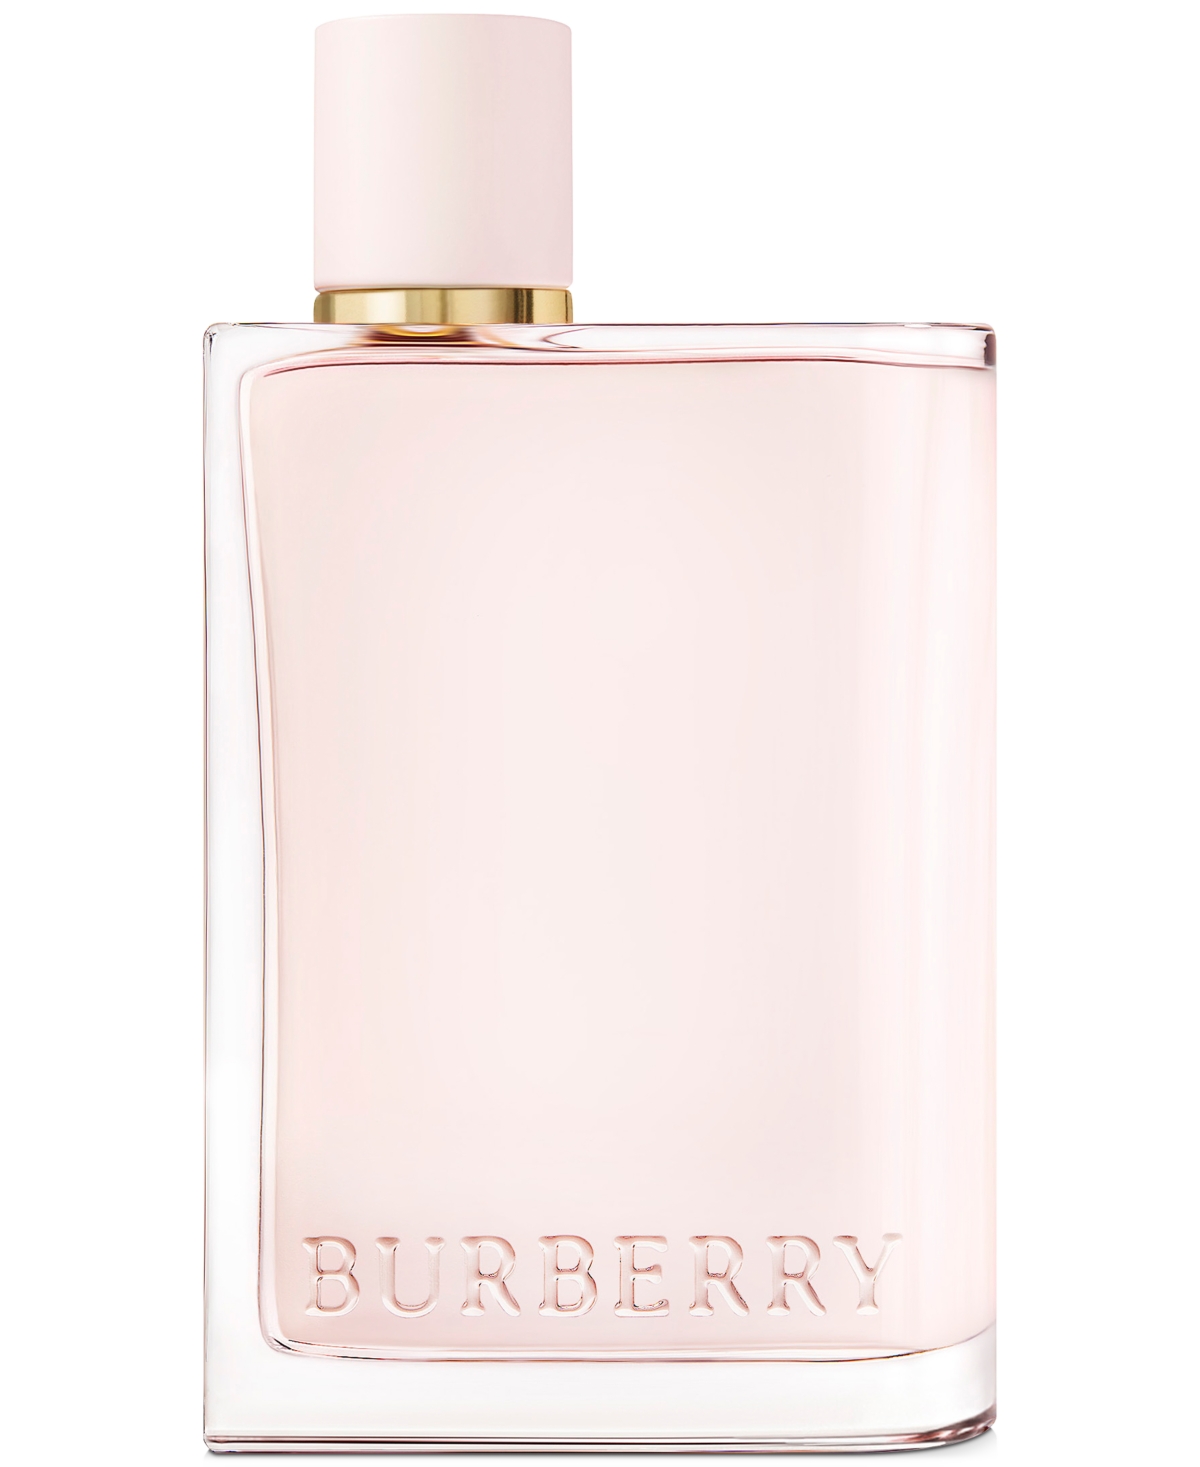 Arriba 57+ imagen her burberry perfume macys